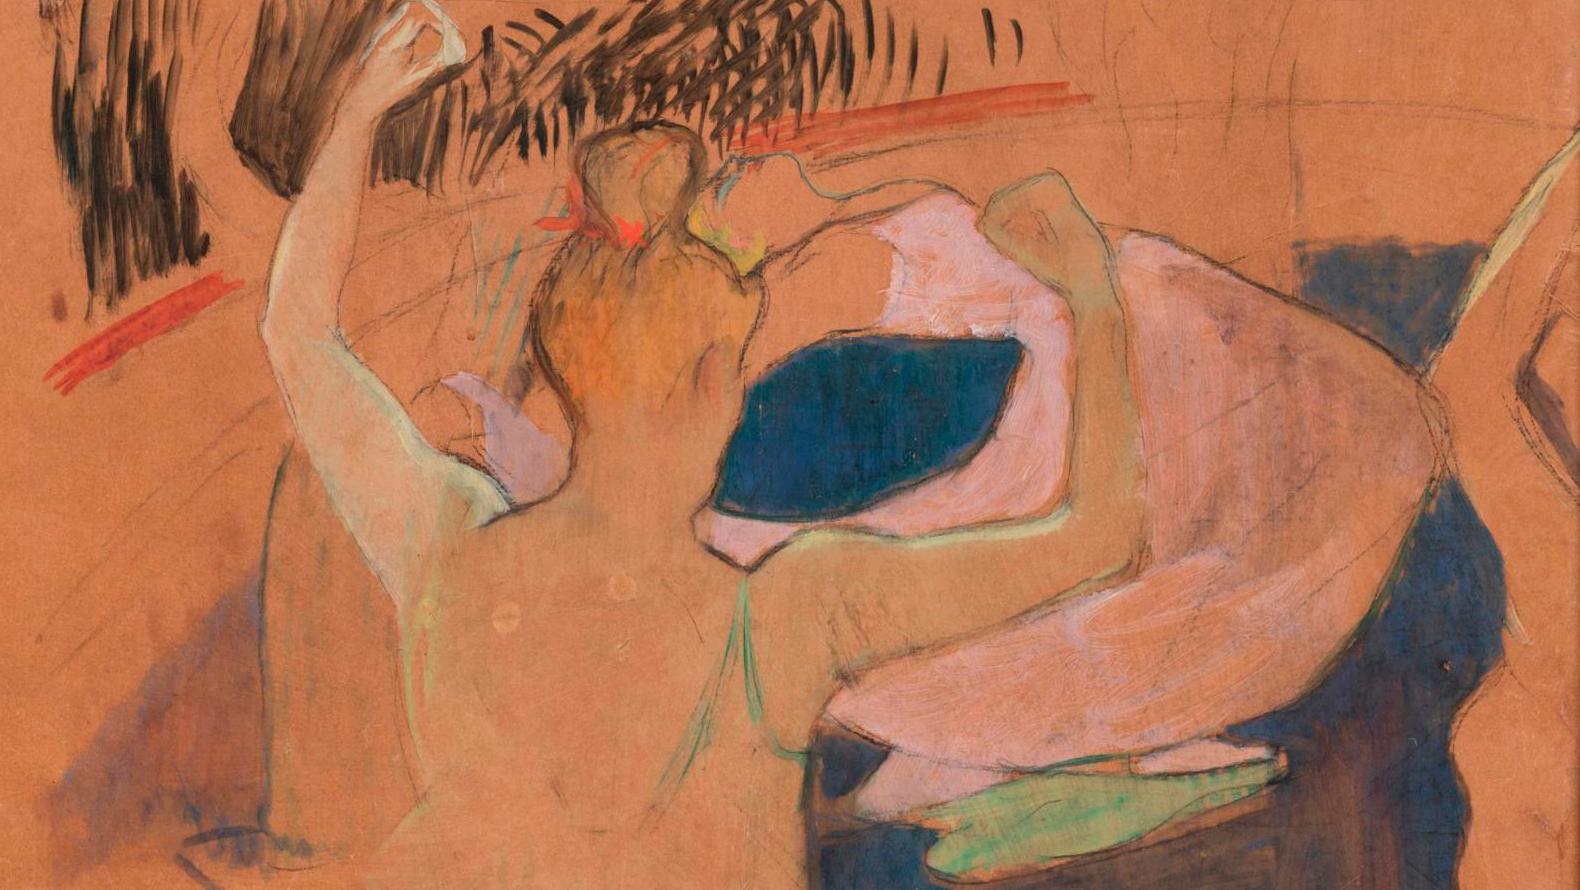 Henri de Toulouse-Lautrec (1864-1901), La Loïe Fuller sur la piste (Loïe Fuller Onstage),... Loïe Fuller by Toulouse-Lautrec: The Spectacle of Life